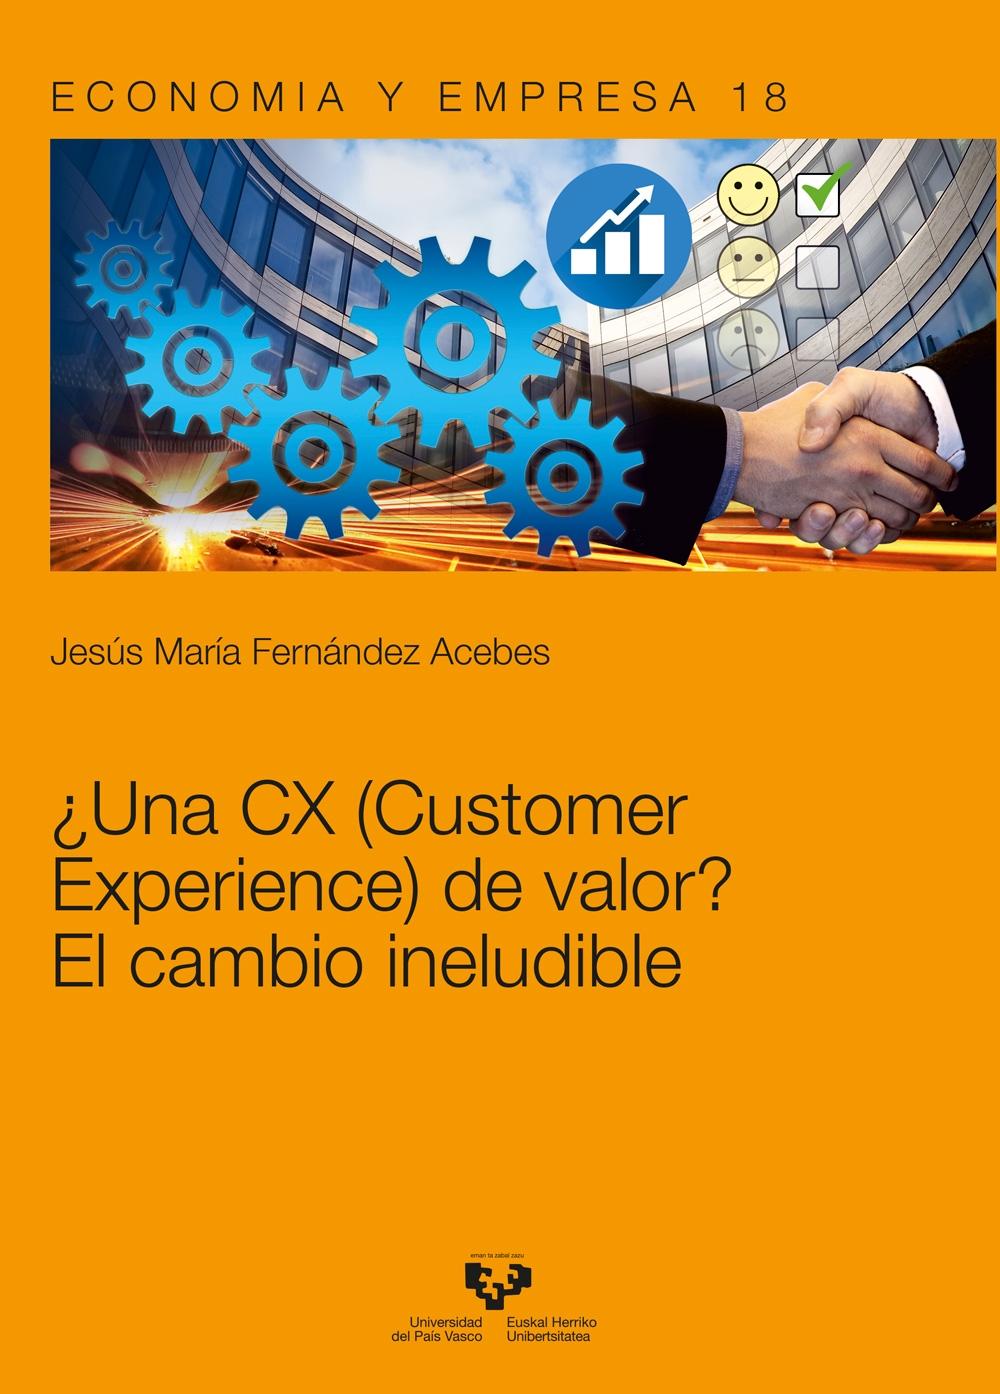 ¿Una CX (Customer Experience) de valor? "El cambio ineludible "